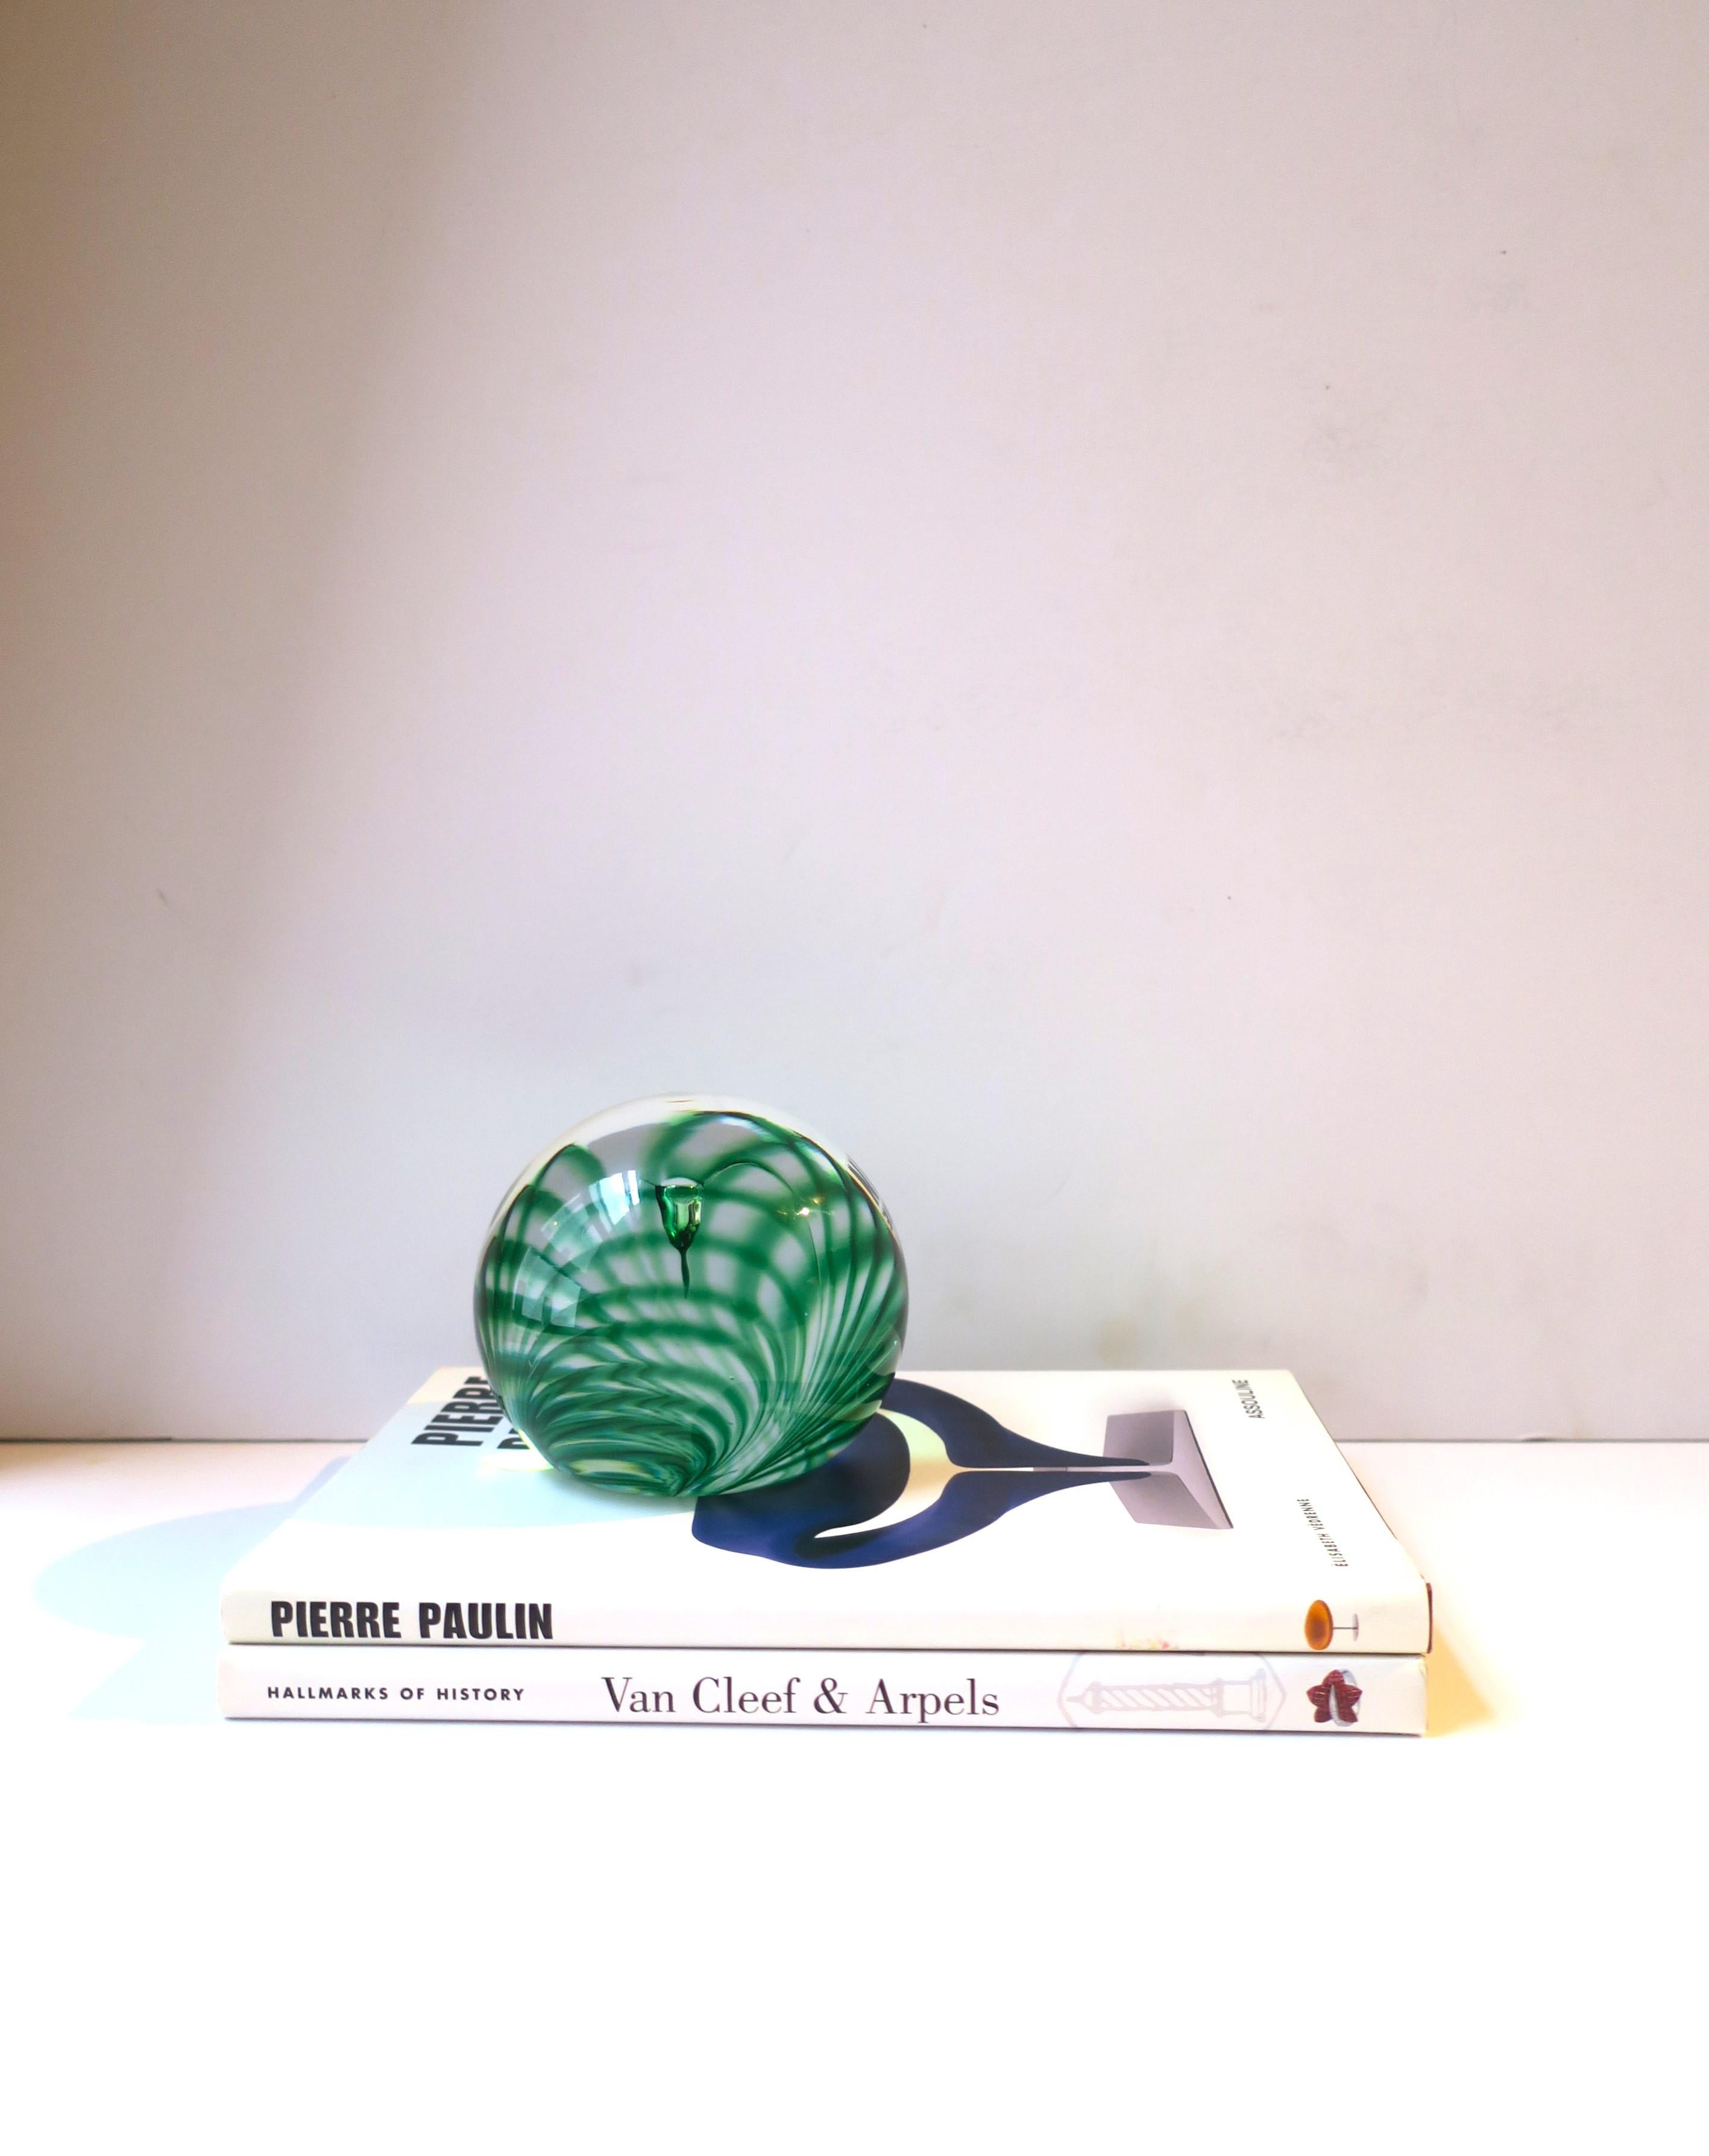 Scandinavian Emerald Green Art Glass Ball Sphere Paperweight Decorative Object For Sale